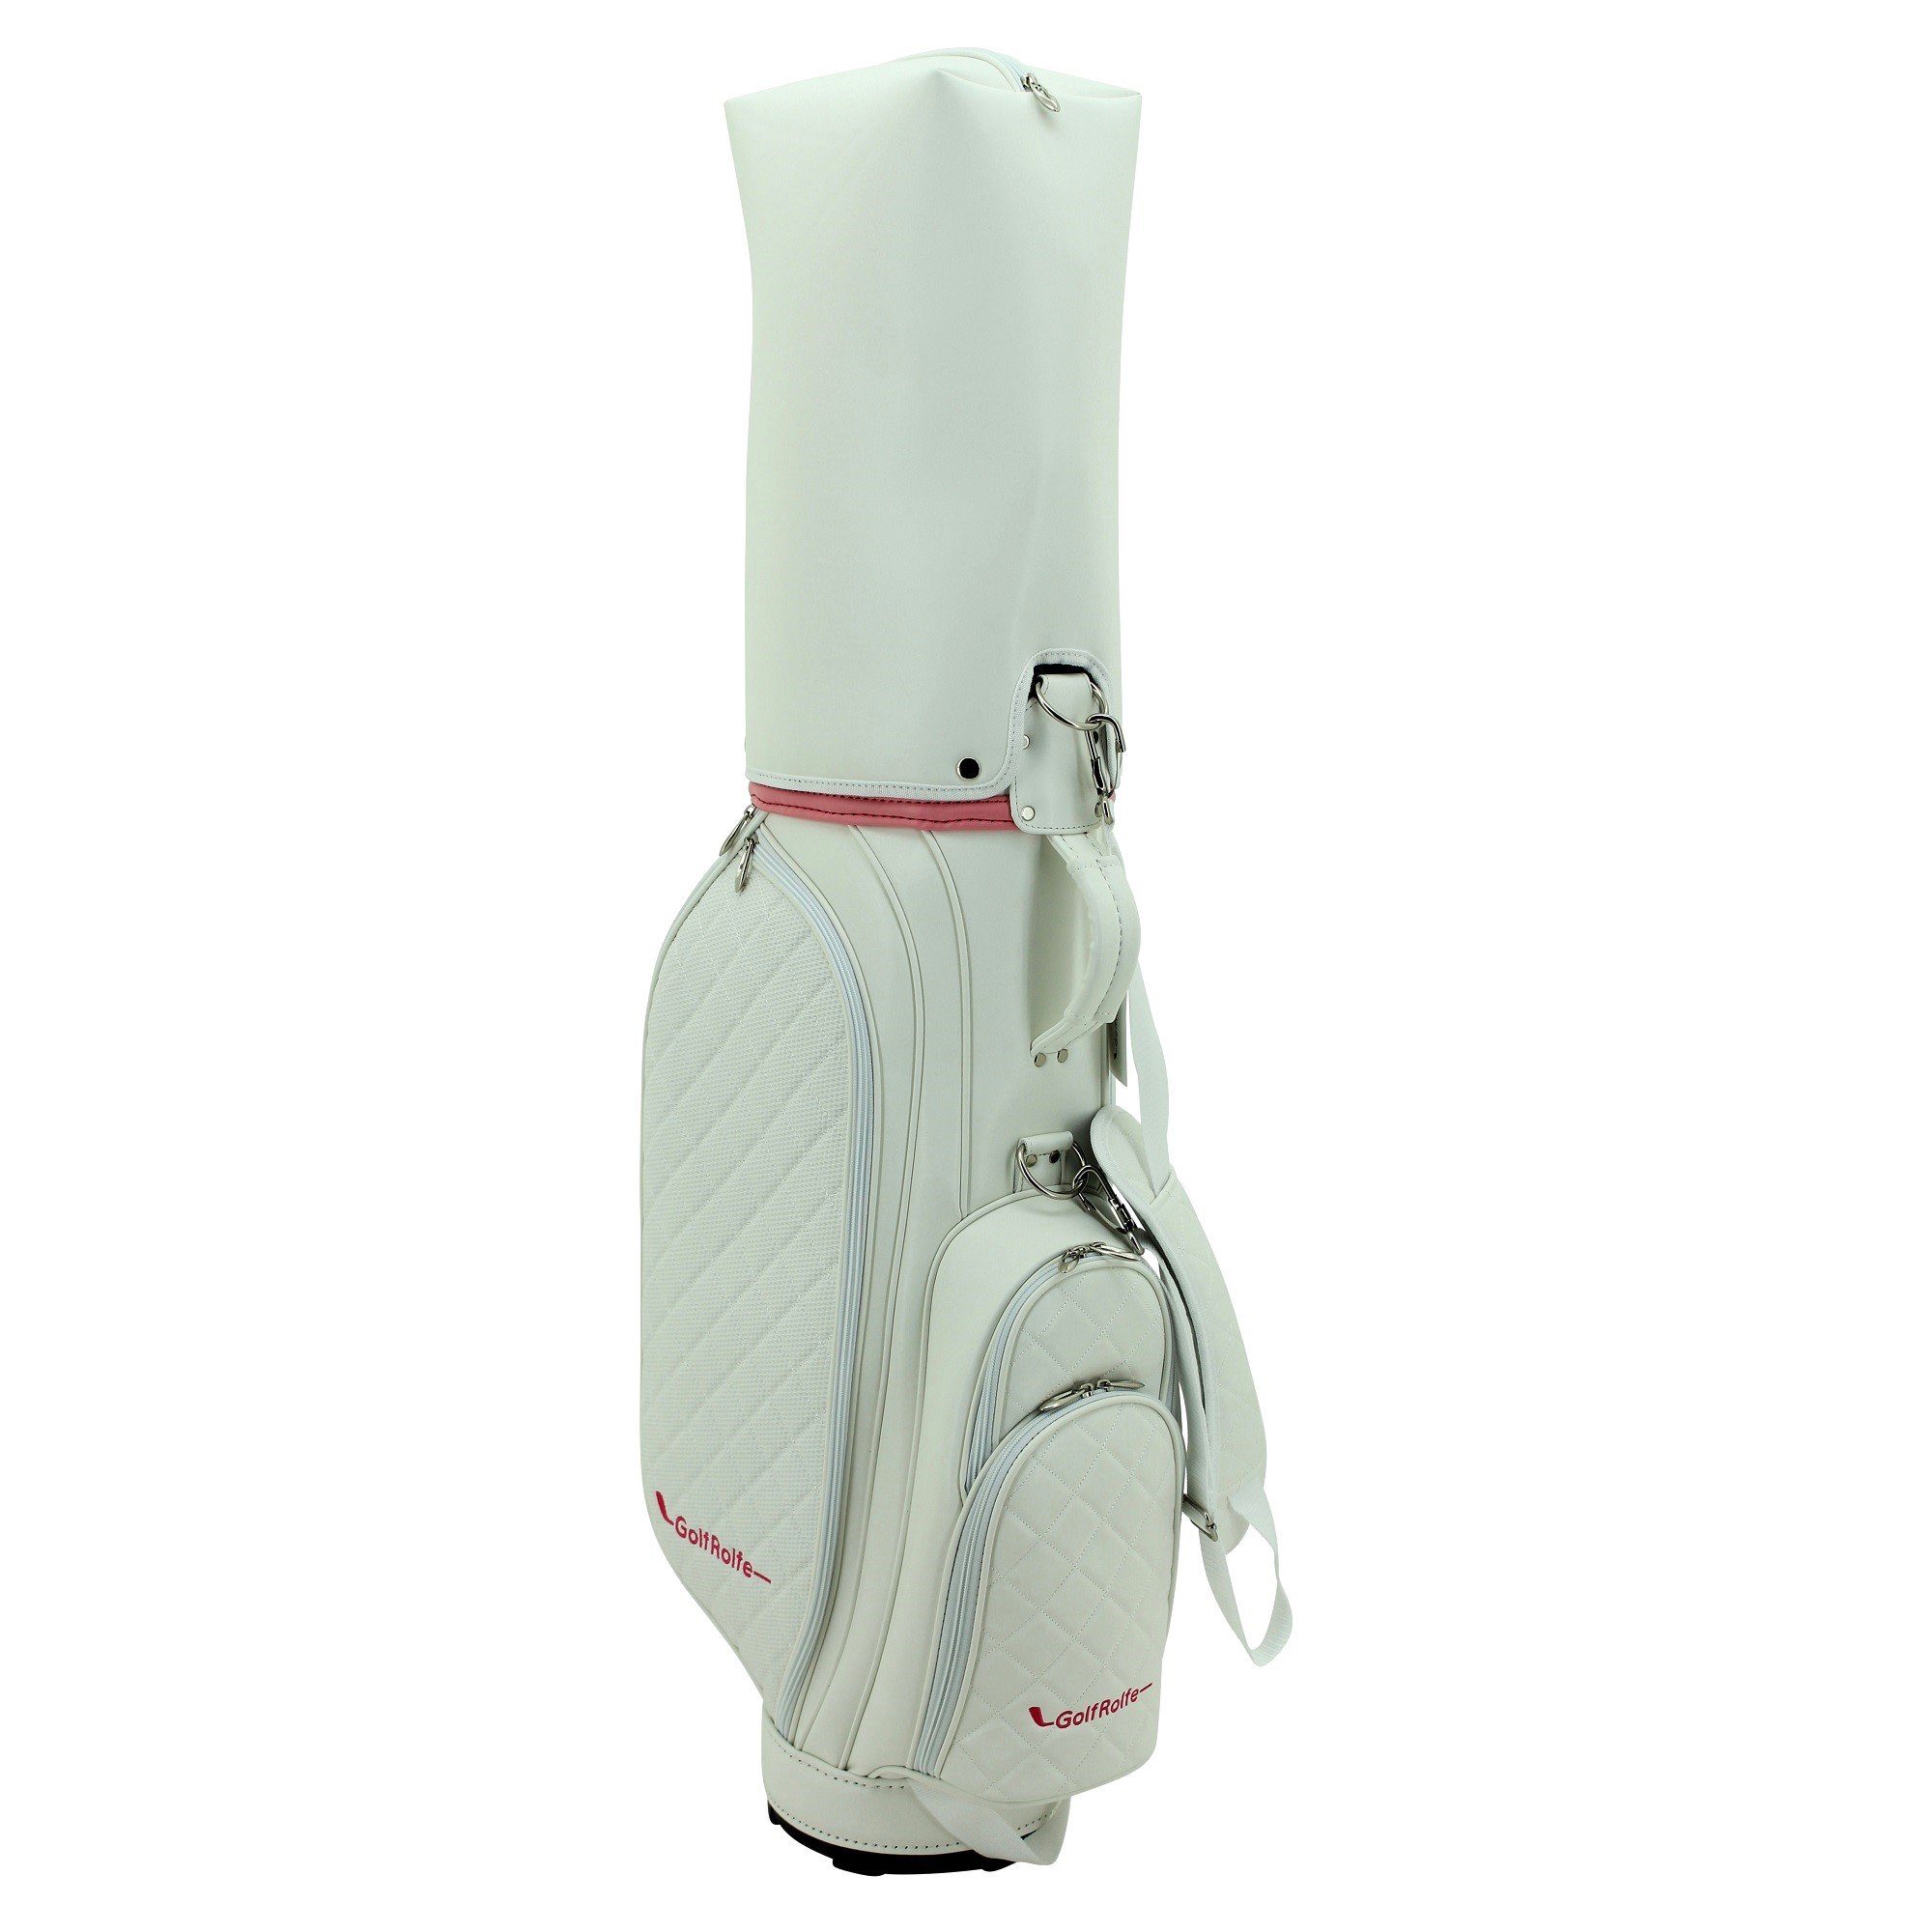 weiß Golftasche - GolfRolfe GolfRolfe 14279 Golfballtasche Golfbag Caddybag Design